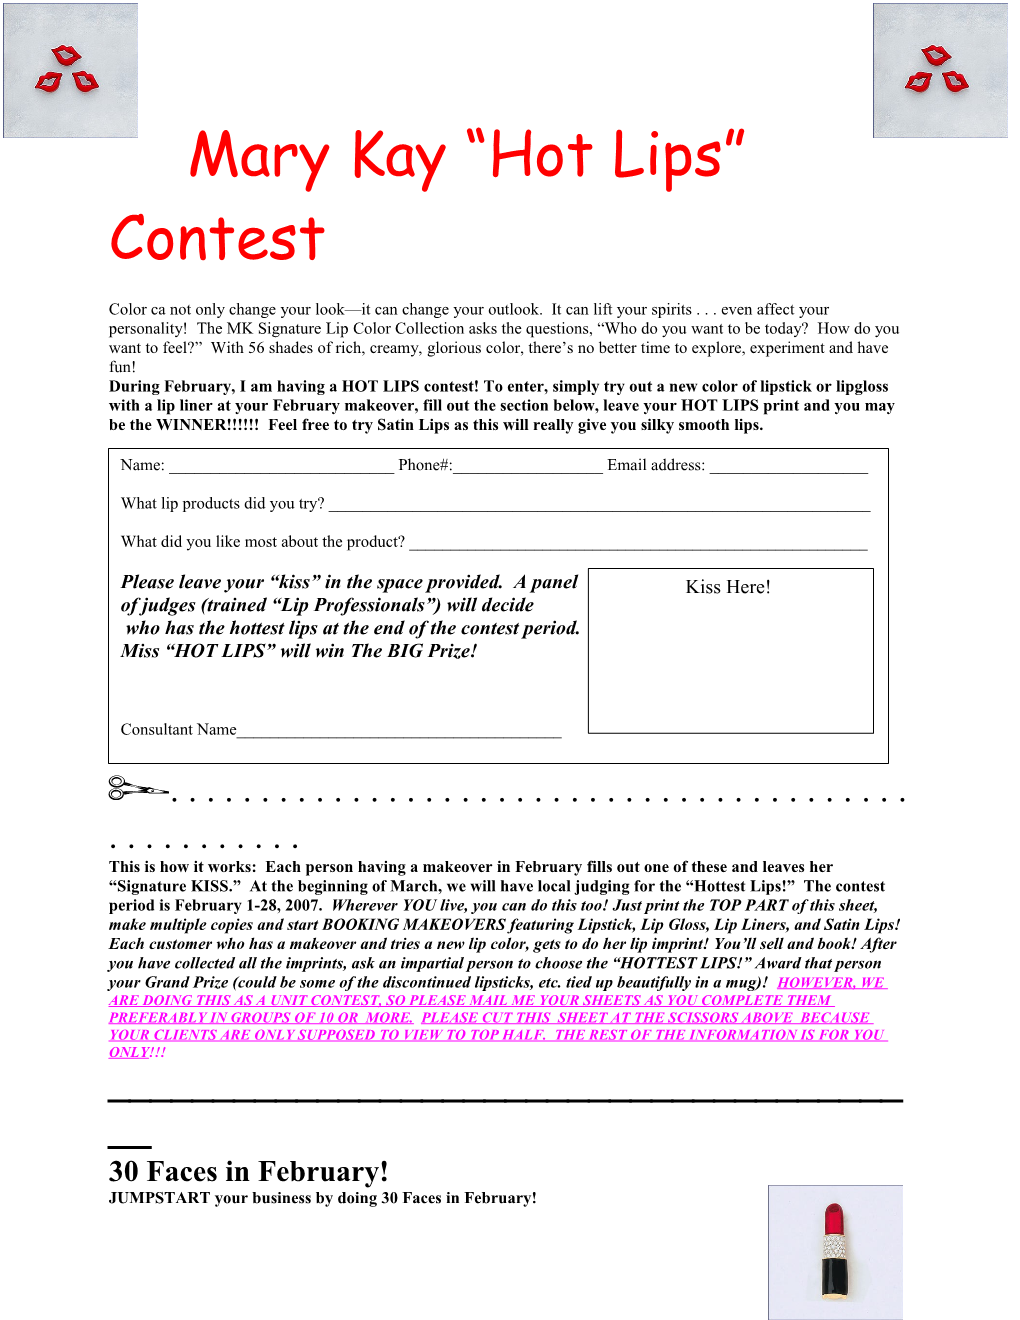 Mary Kay Hot Lips Contest